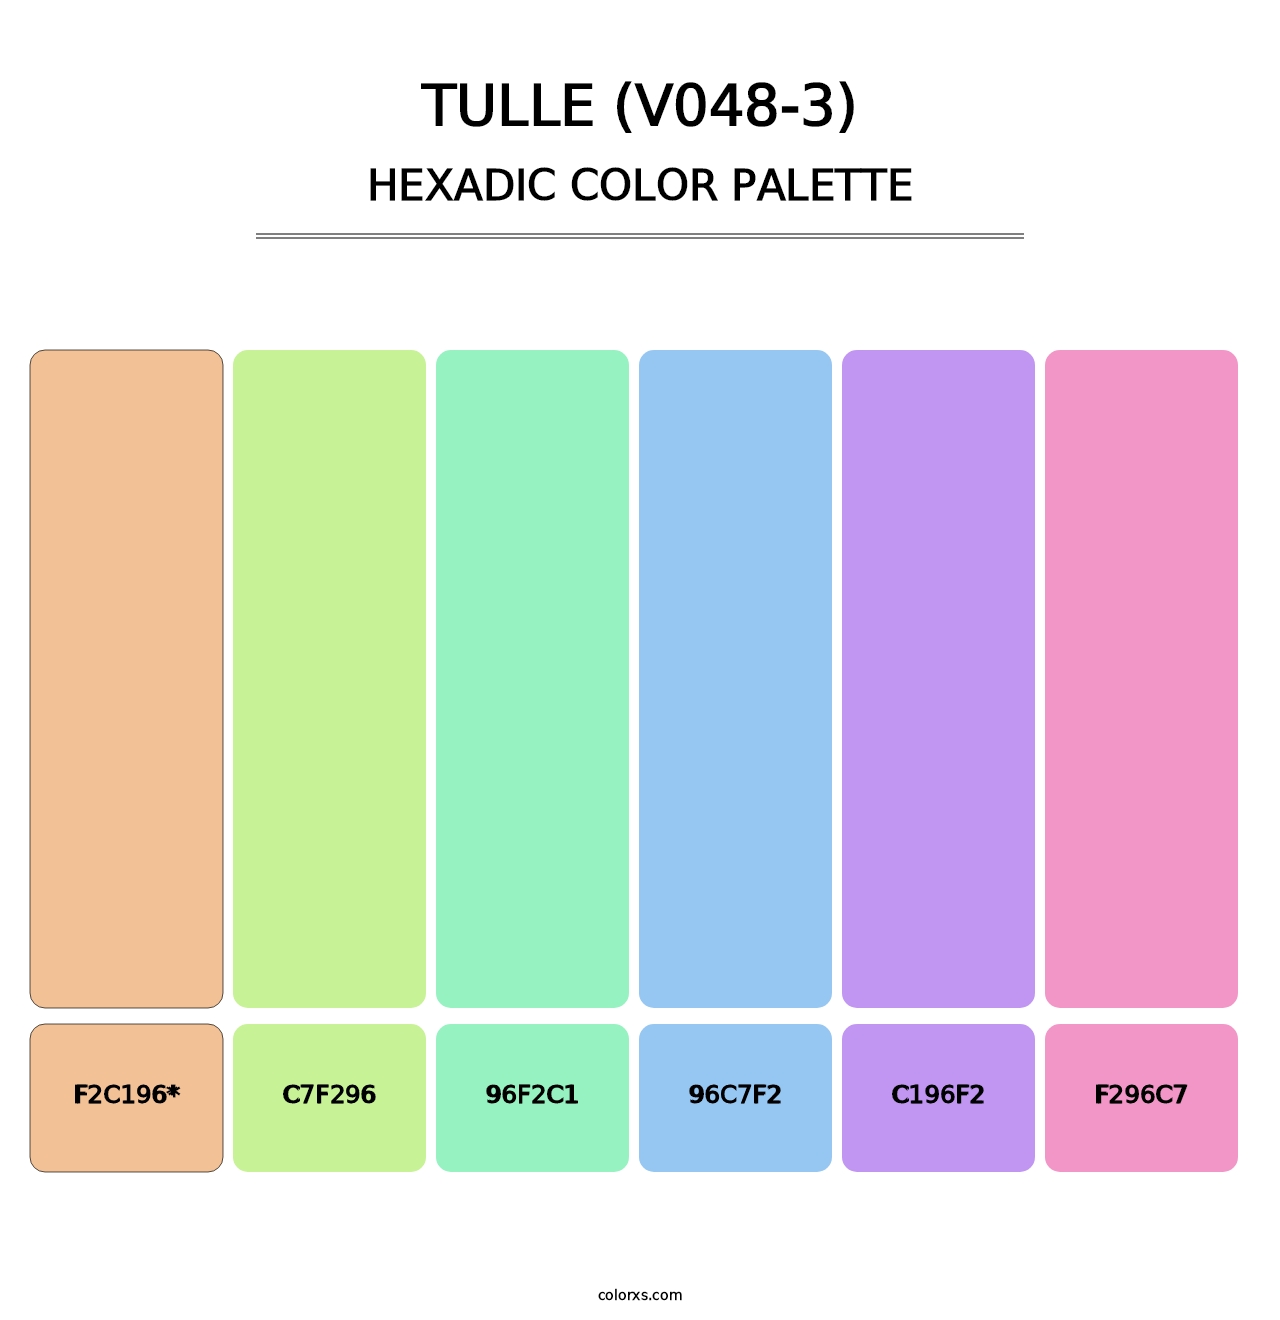 Tulle (V048-3) - Hexadic Color Palette